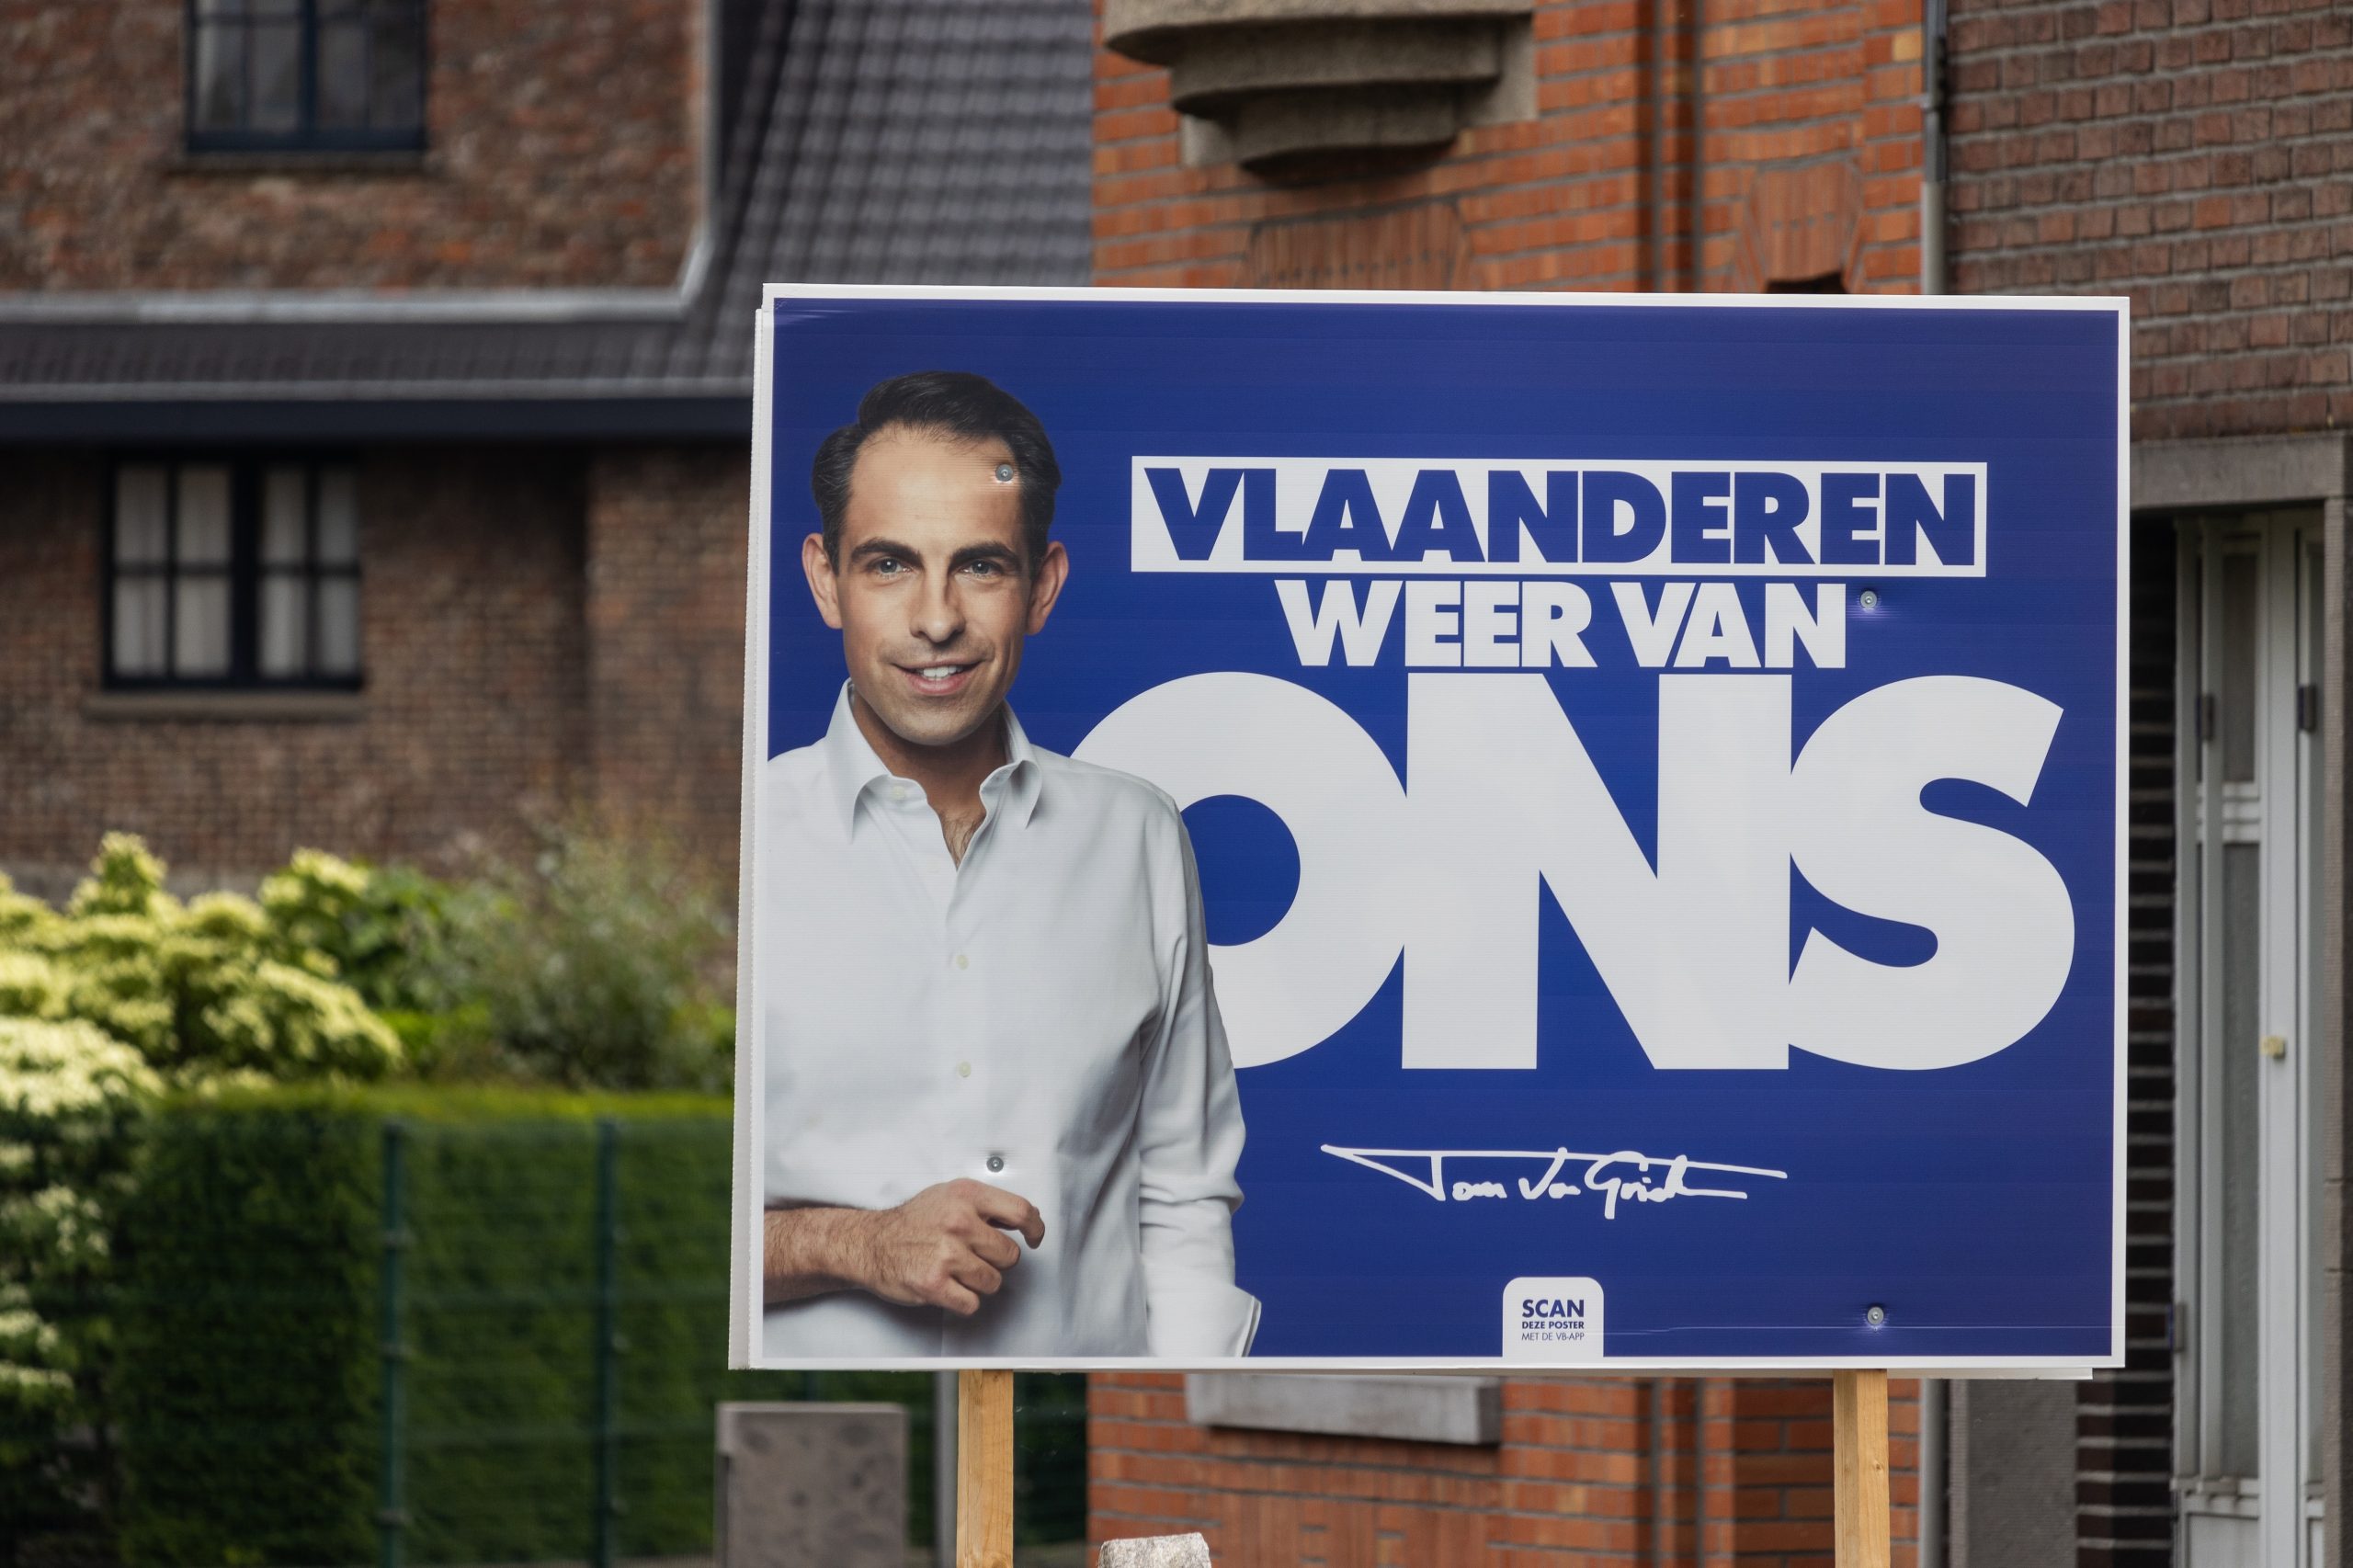 Belçikalılar 9 Haziran'da hem federal düzeyde hem de bölgelerdeki meclisleri belirleyecek sçeimlerin yanı sıra Avrupa Parlamentosu seçimleri için de sandığa gidecek. Kamuoyu yoklamalarına göre Flaman Bölgesi’nde popülist milliyetçilik, Valon Bölgesi’nde ise -daha az ölçüde- sol partiler yükselişte. Ülke genelinde ise Belçika’nın bir kez daha yönetilemez hâle gelebileceği ve bölüneceği bile tahmin ediliyor.